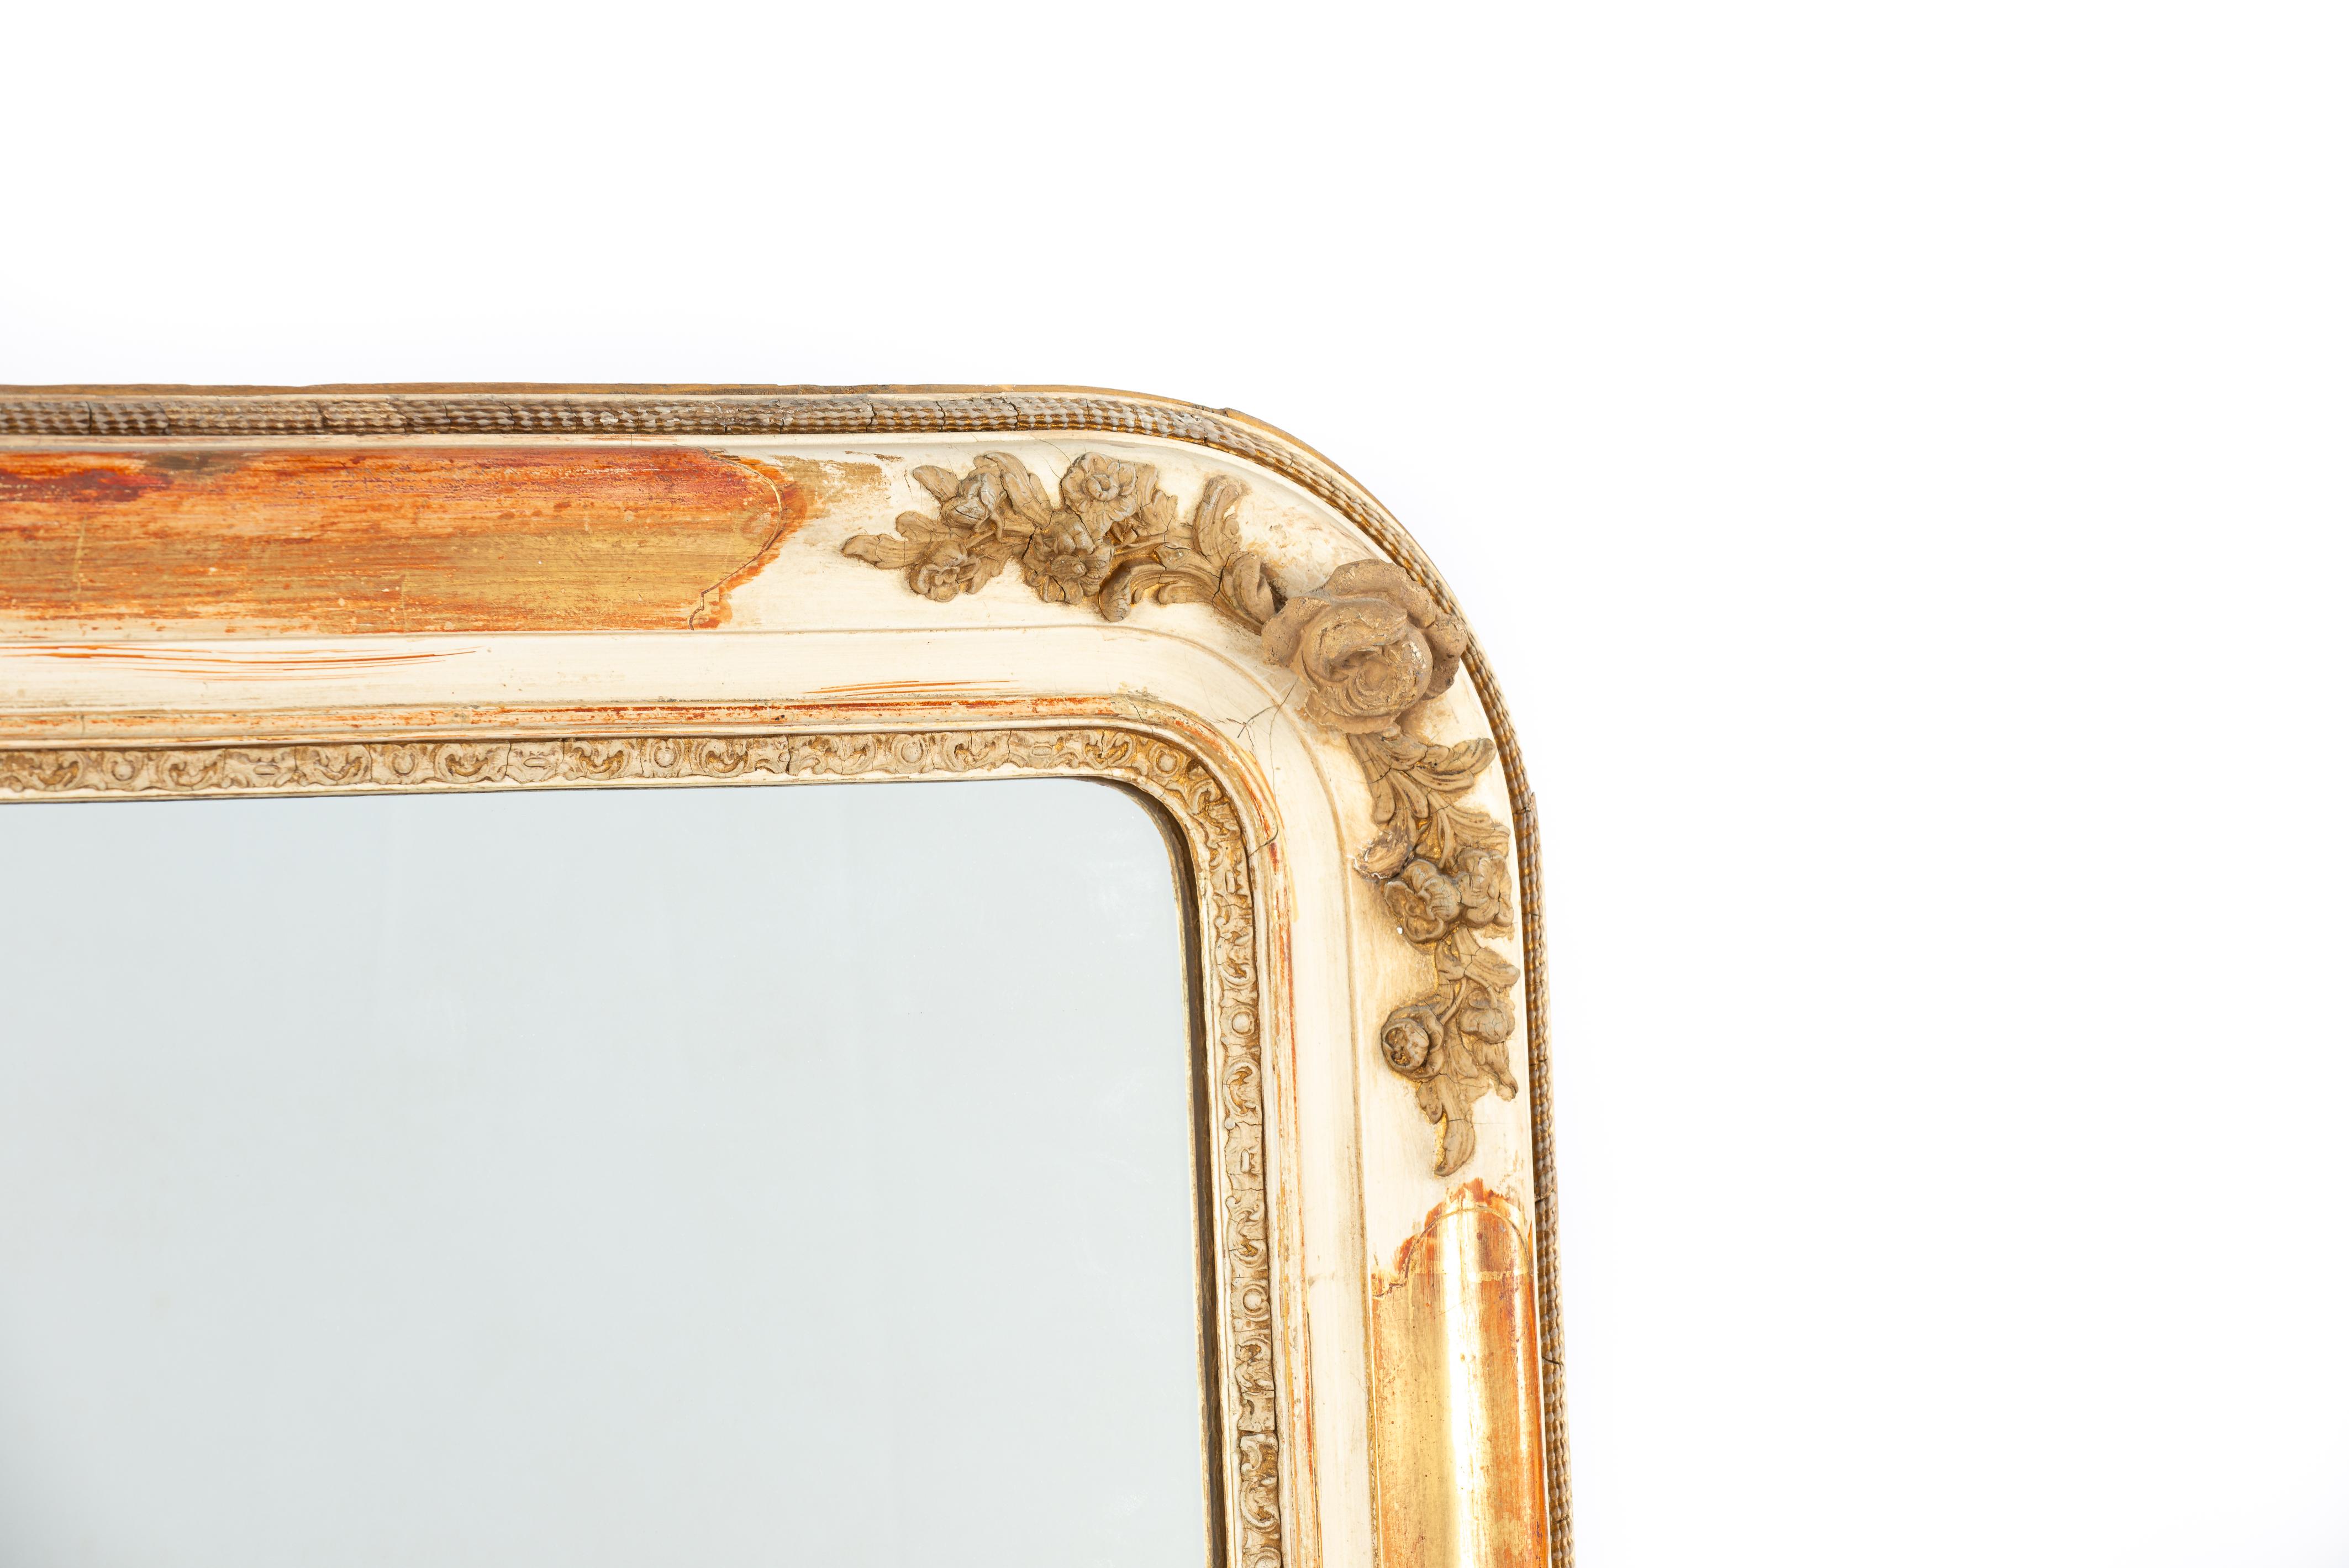 Ce miroir de cheminée ancien a été fabriqué dans le sud de la France au milieu du XIXe siècle. Le miroir présente des angles supérieurs en quart de cercle, caractéristiques du style Louis Philippe. Son cadre est en pin massif, lissé au gesso. Le